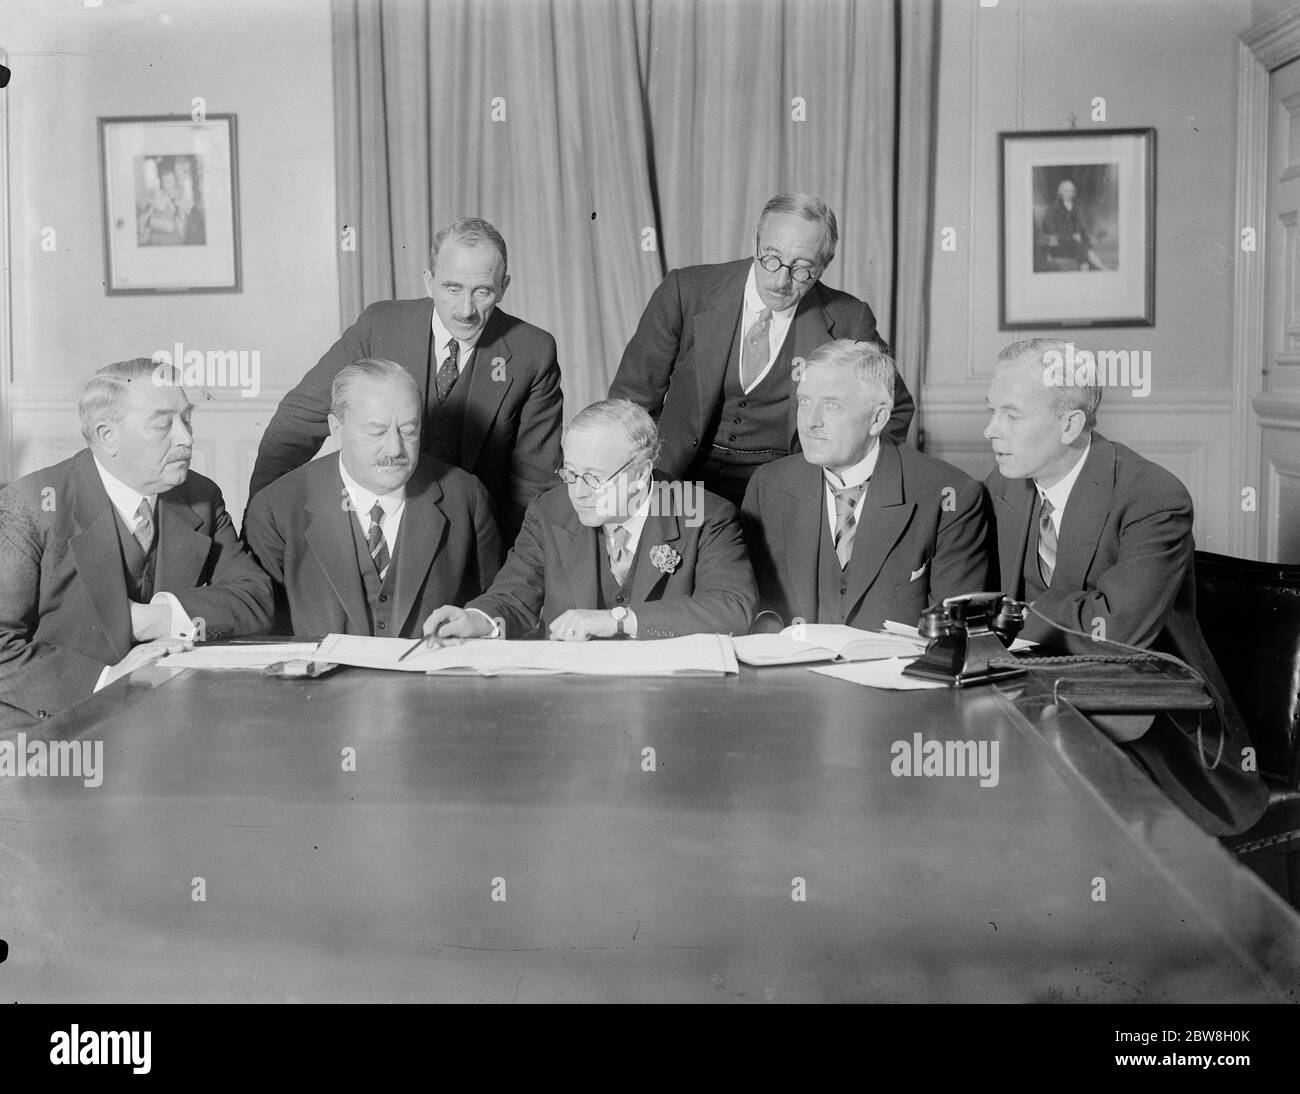 Danimarca interessata al servizio telefonico britannico . Sir Kingsley Wood ( centro ) spiegando con l'aiuto di una mappa il sistema telefonico ai visitatori danesi . 18 ottobre 1933 Foto Stock